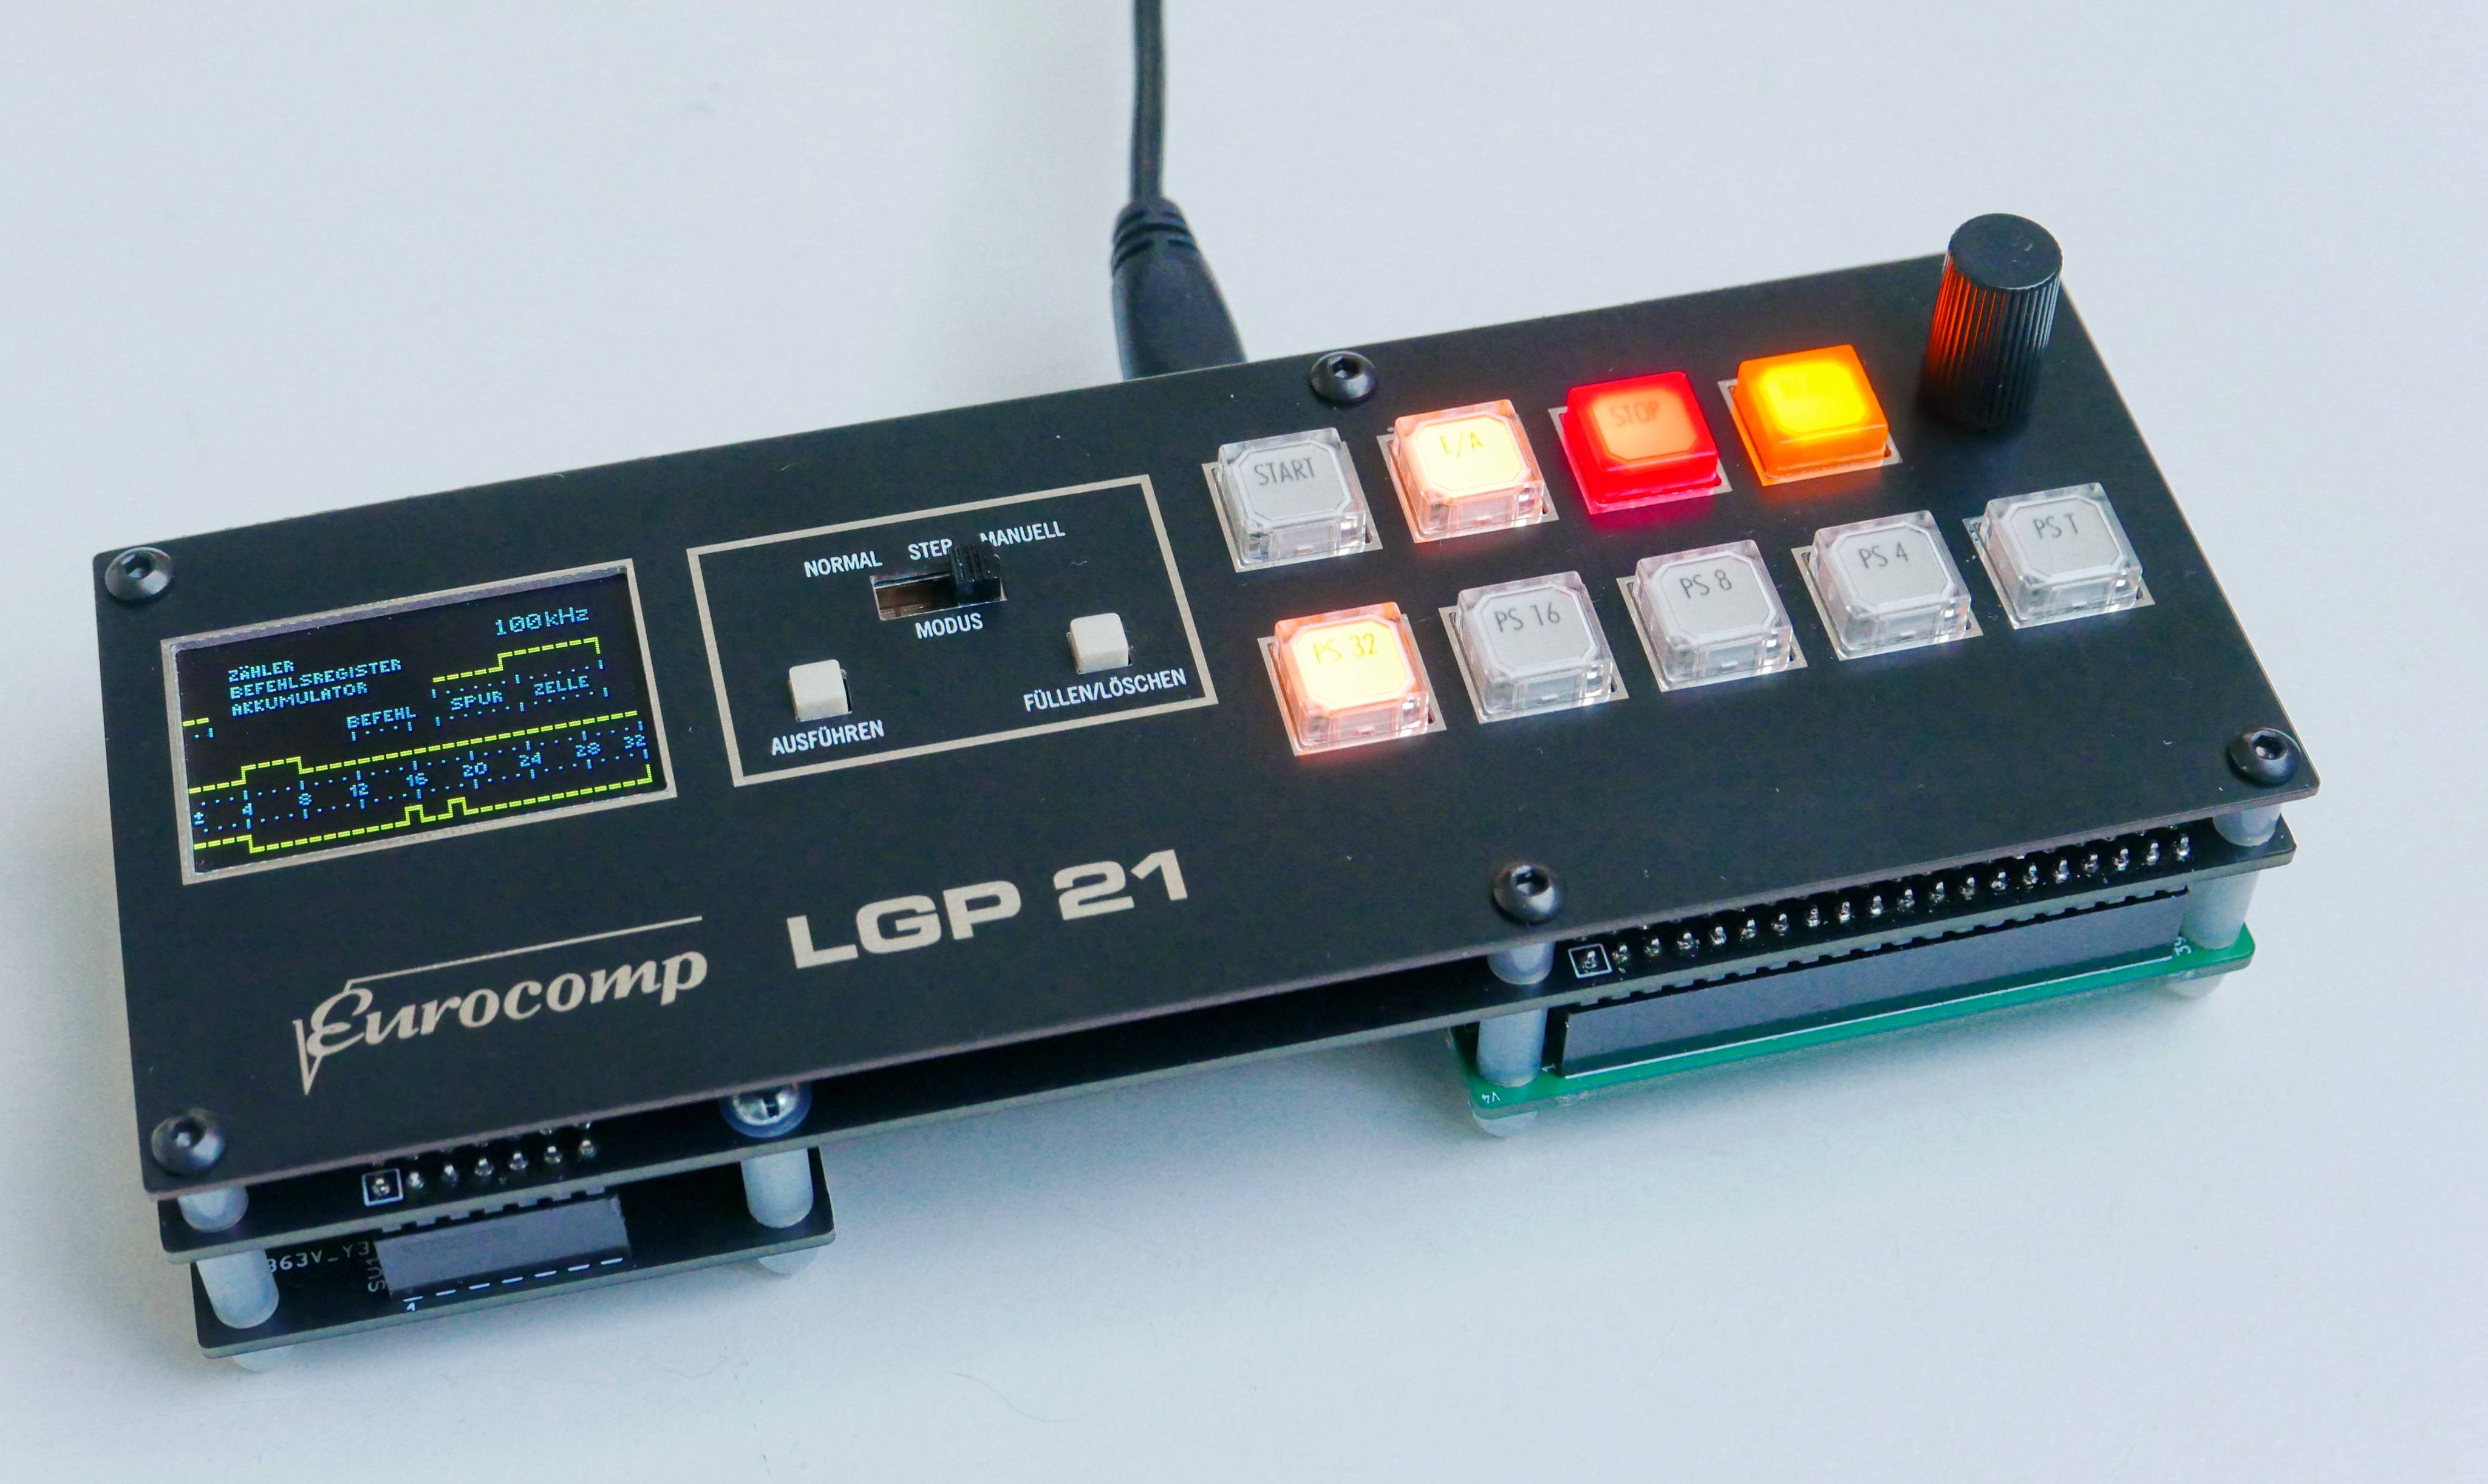 LGP-21 replica, assembled